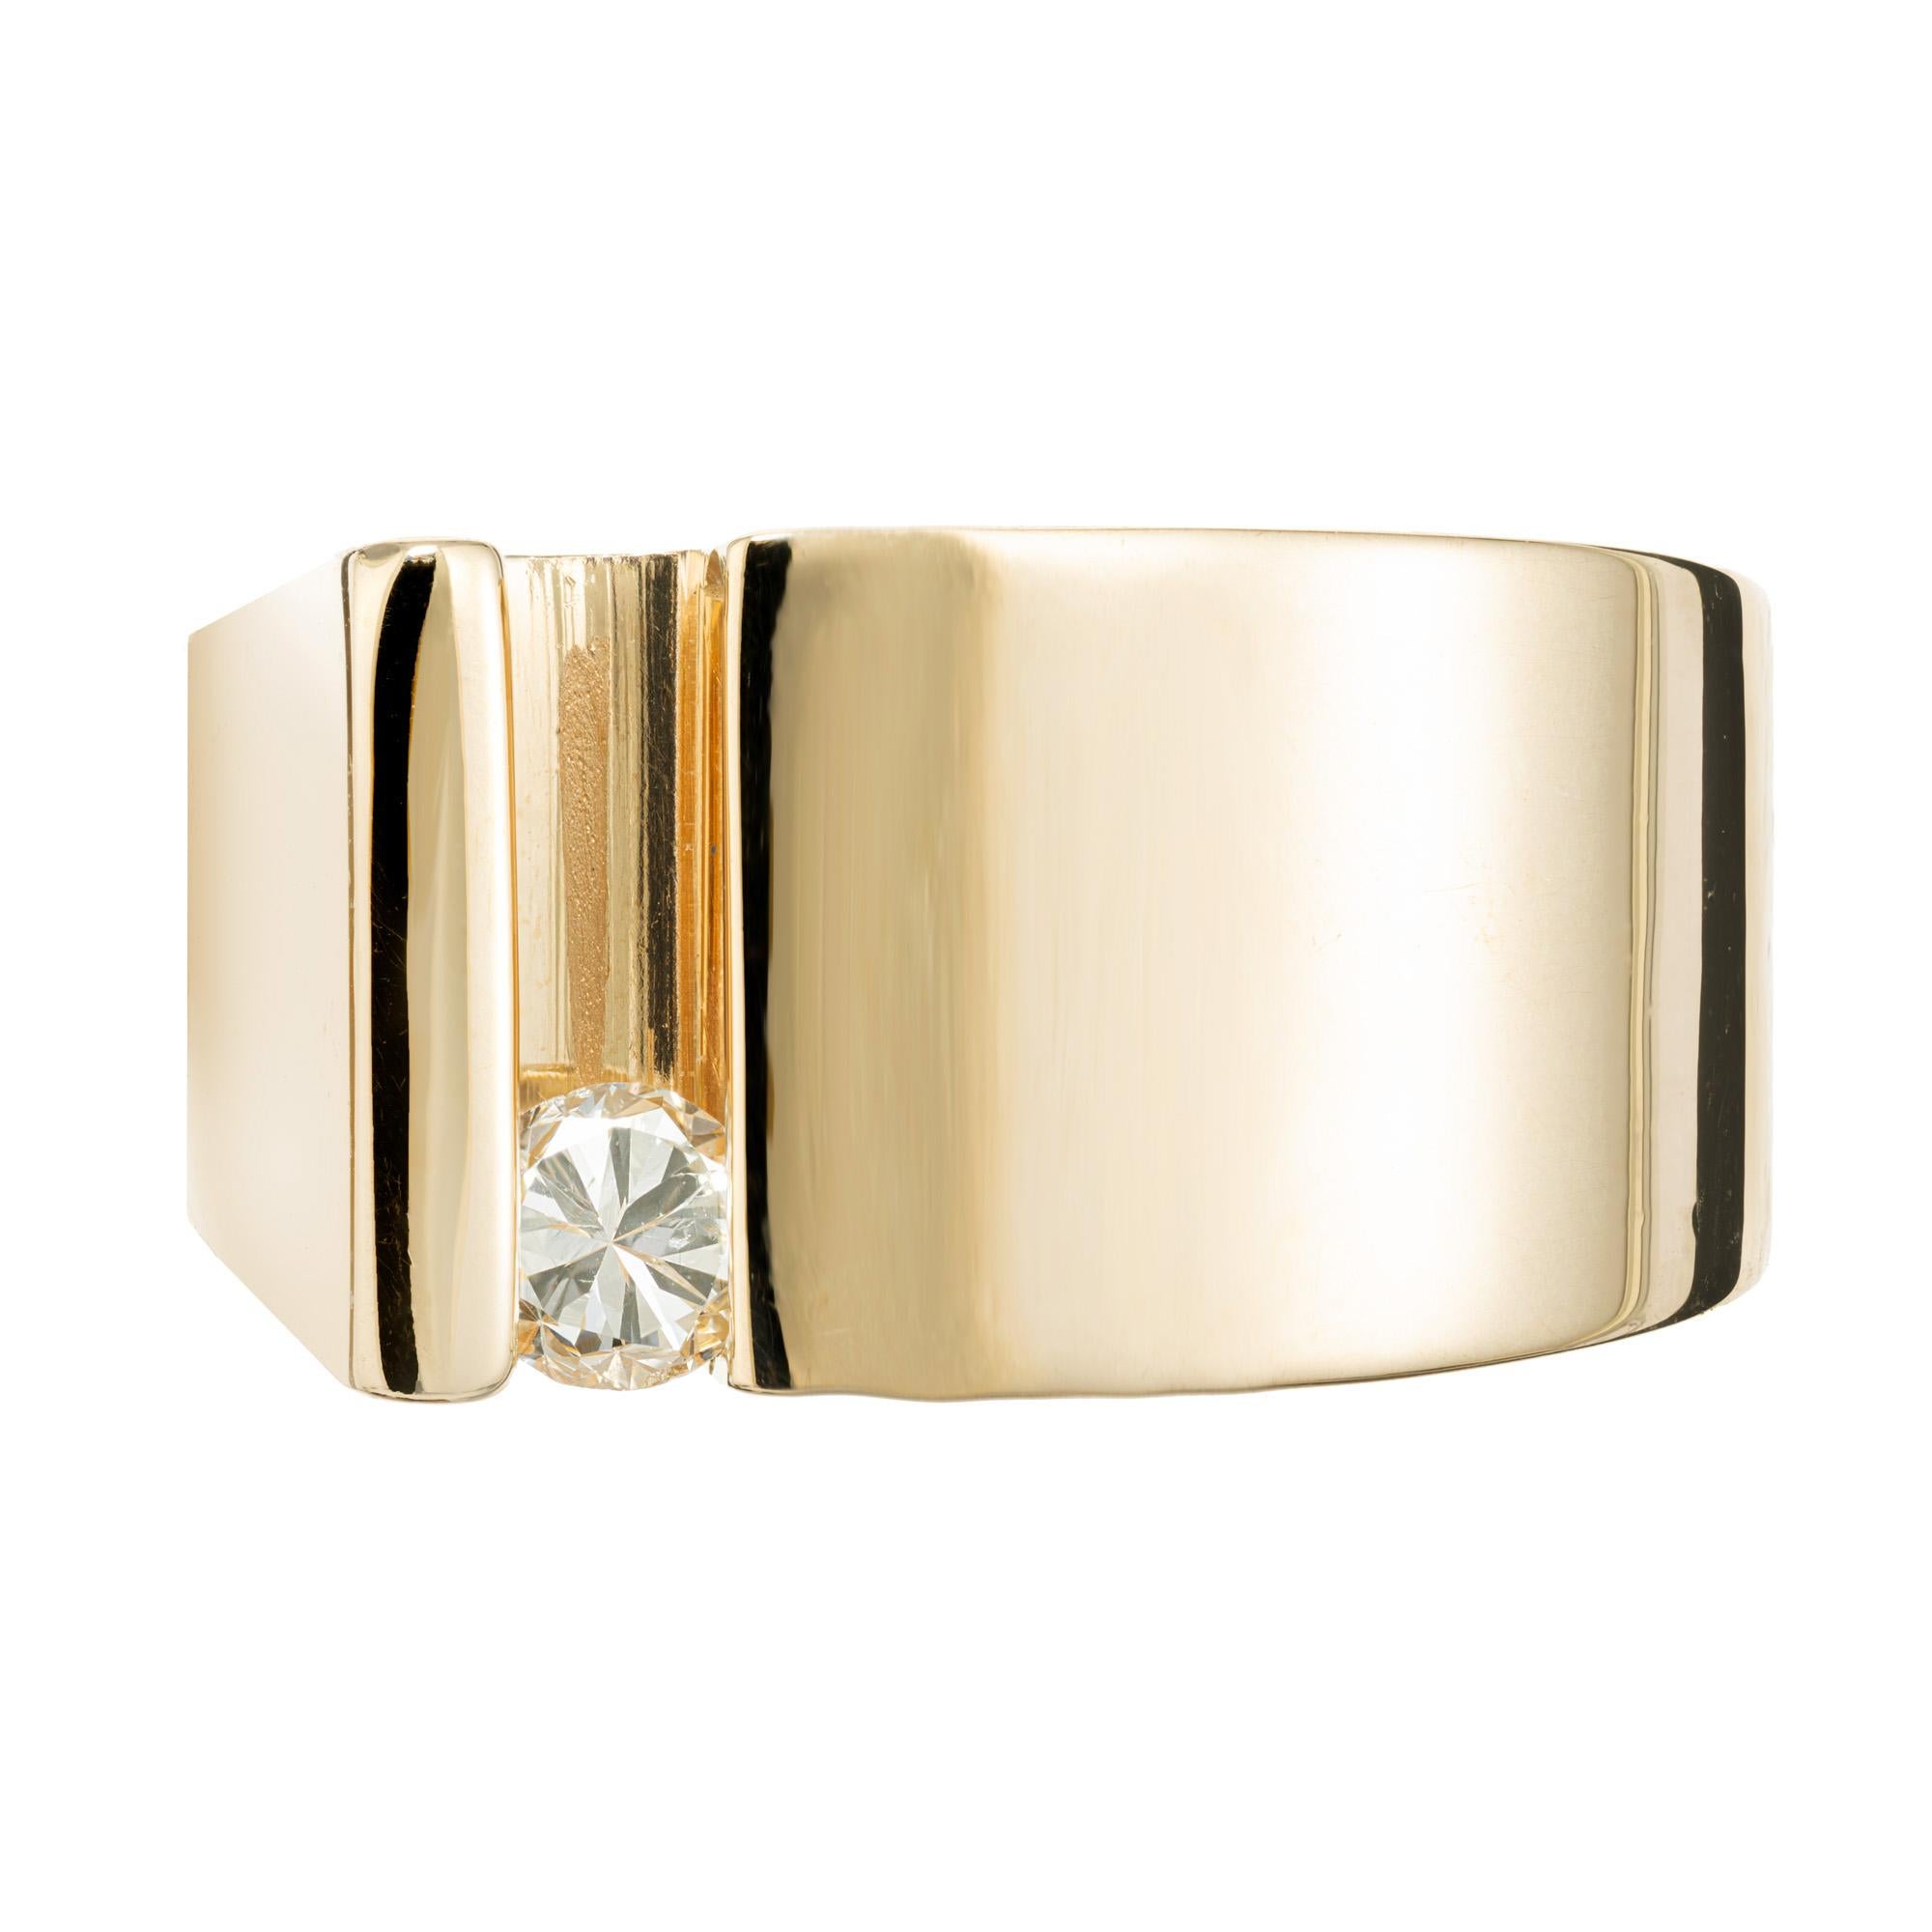 1970er Jahre modernes Design Diamant Folie 14k Gelbgold Ring, der eine einzigartige und moderne Wendung auf einen klassischen Stil bietet. Der einzelne runde Diamant gleitet als Teil des Designs sicher und fest hin und her. Der Diamant hat eine hohe